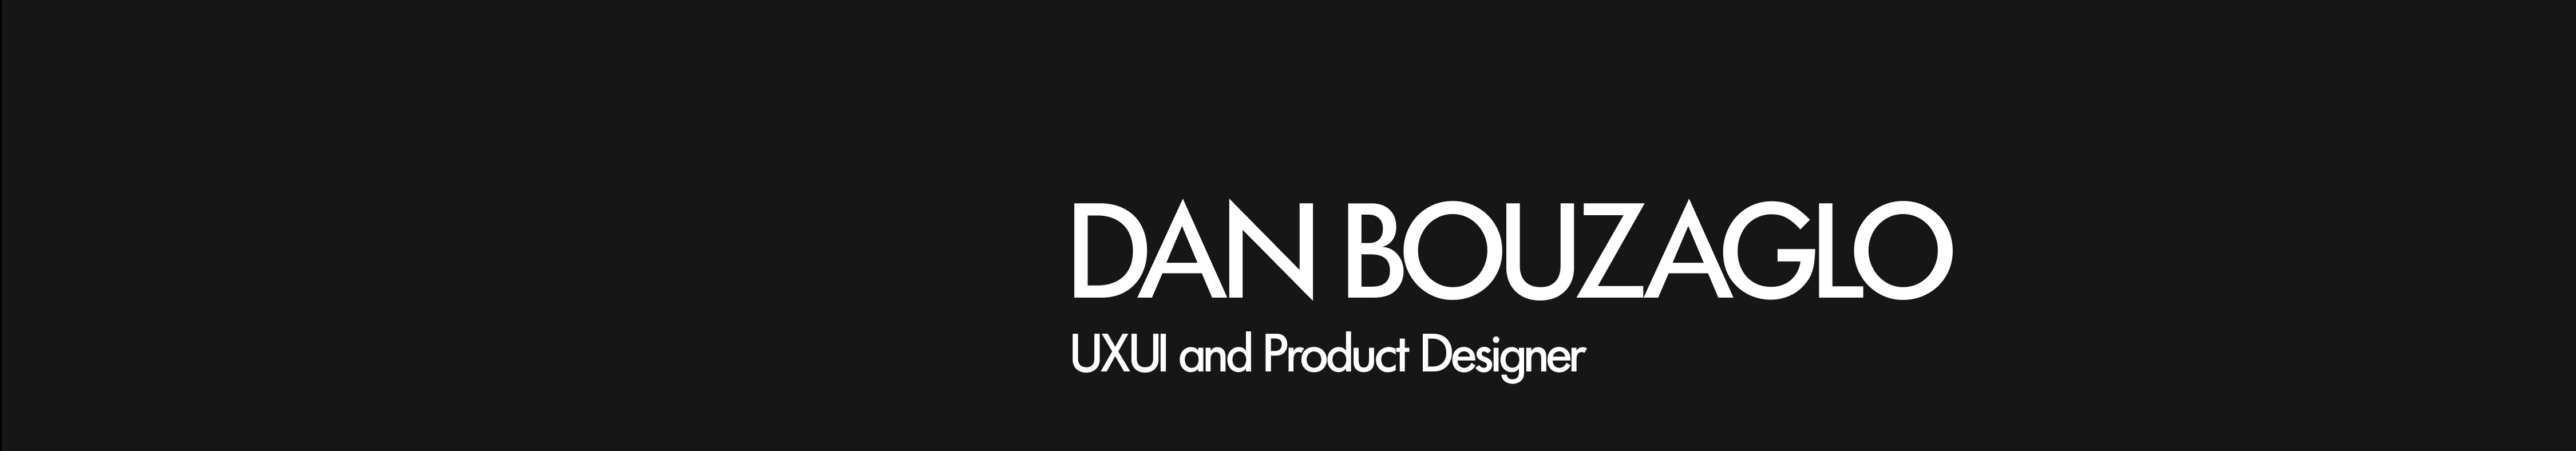 Dan Bouzaglo's profile banner